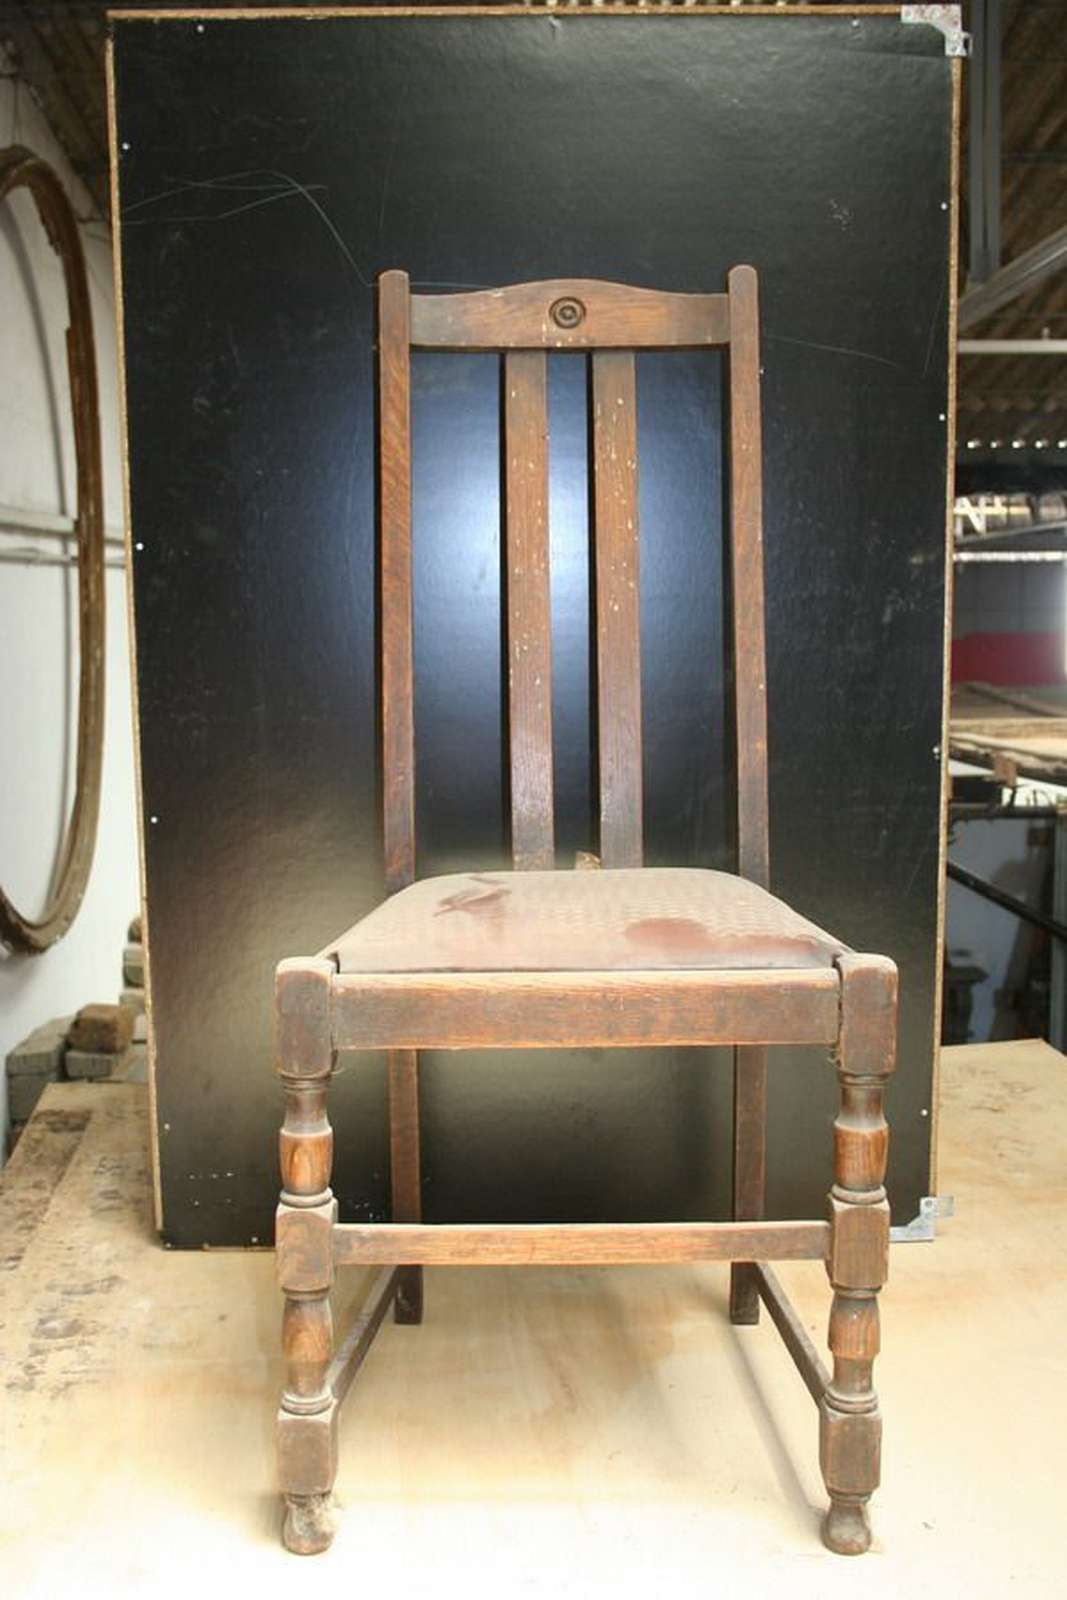 Sedia in legno - Salotti e Sedie - Mobili antichi - Prodotti - Antichità Fiorillo